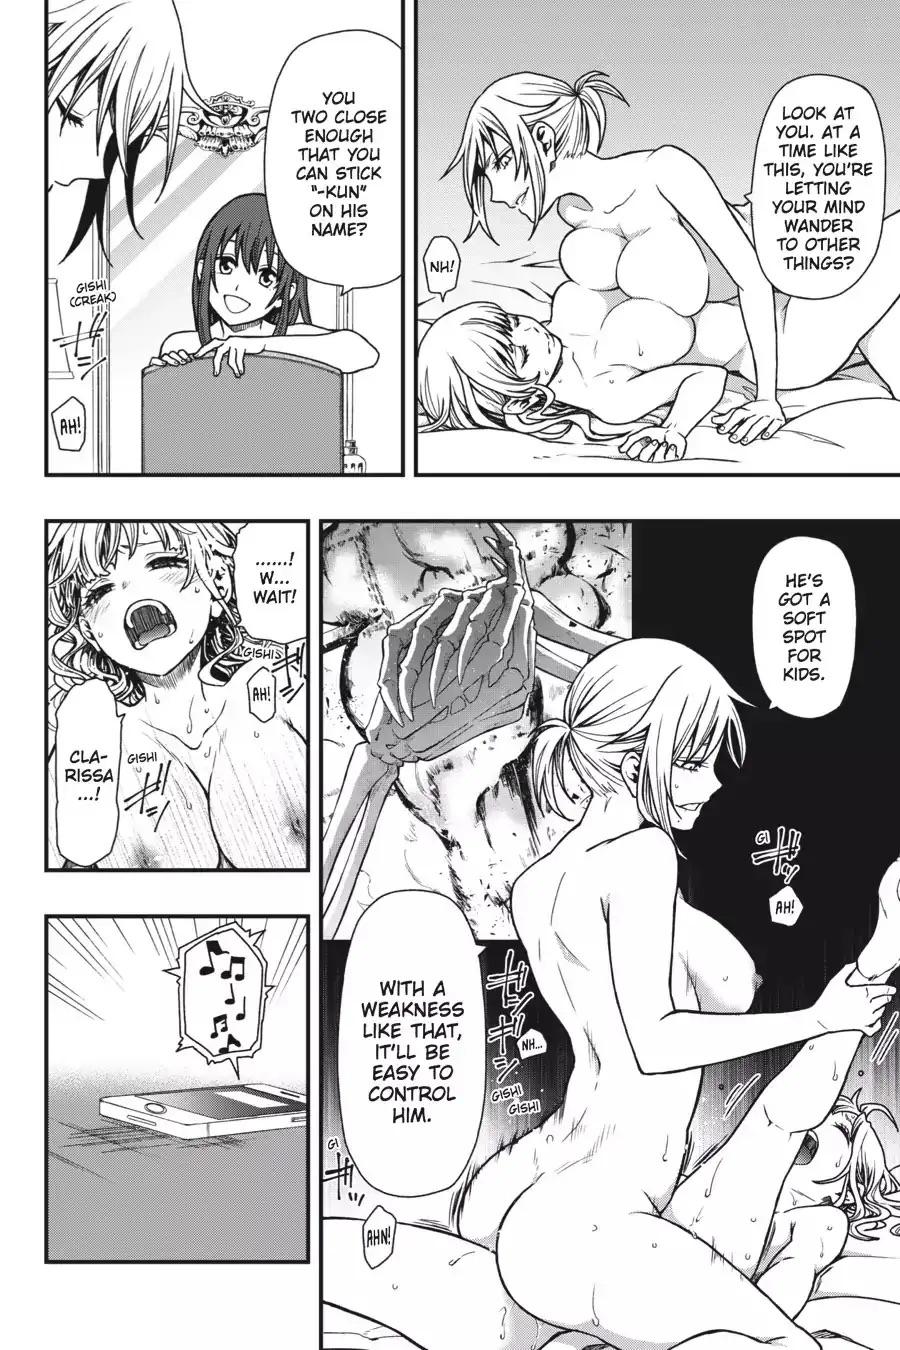 Yuri manga sexual